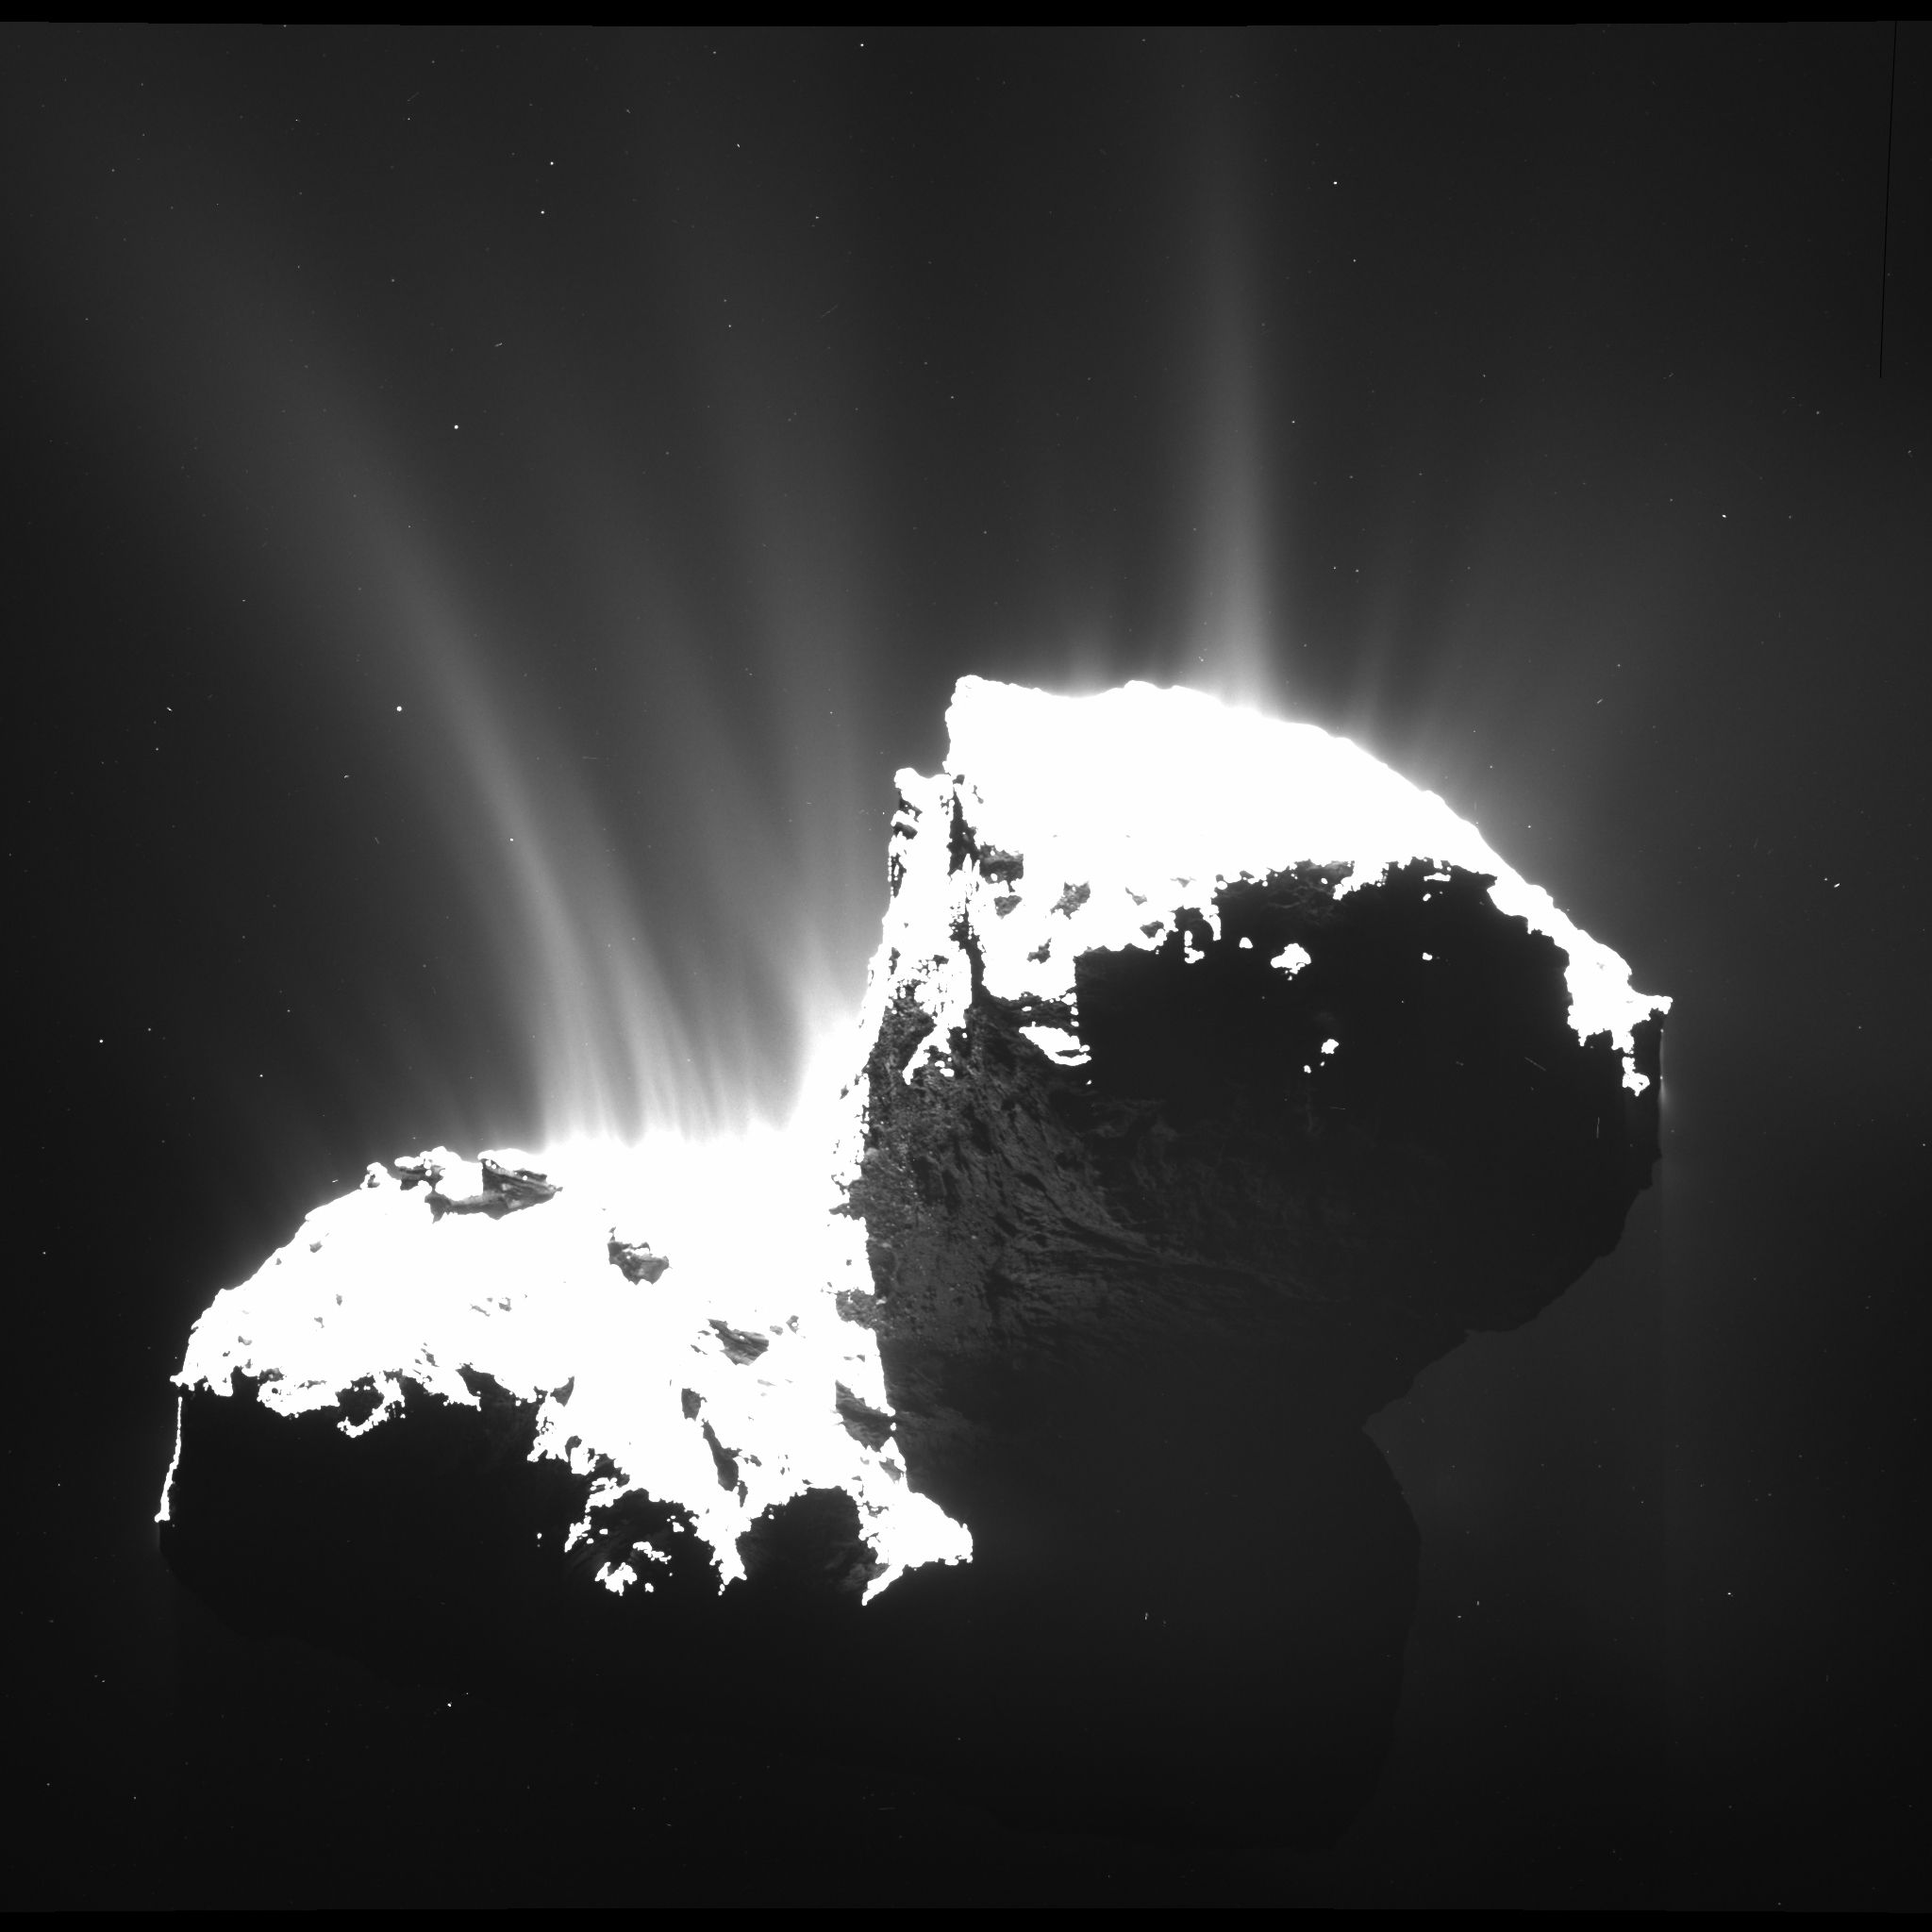 Tchouri a été photographiée par la caméra grand-angle Osiris de Rosetta, le 22 novembre 2014, à 30 km de la surface. La comète dégage une multitude de jets de gaz et de poussières. La plupart sont situés dans la région du « cou », entre les deux lobes de la comète, et témoignent de son activité. © Esa, Rosetta, MPS, Osiris, MPS, UPD, LAM, IAA, SSO, INTA, UPM, DASP, IDA